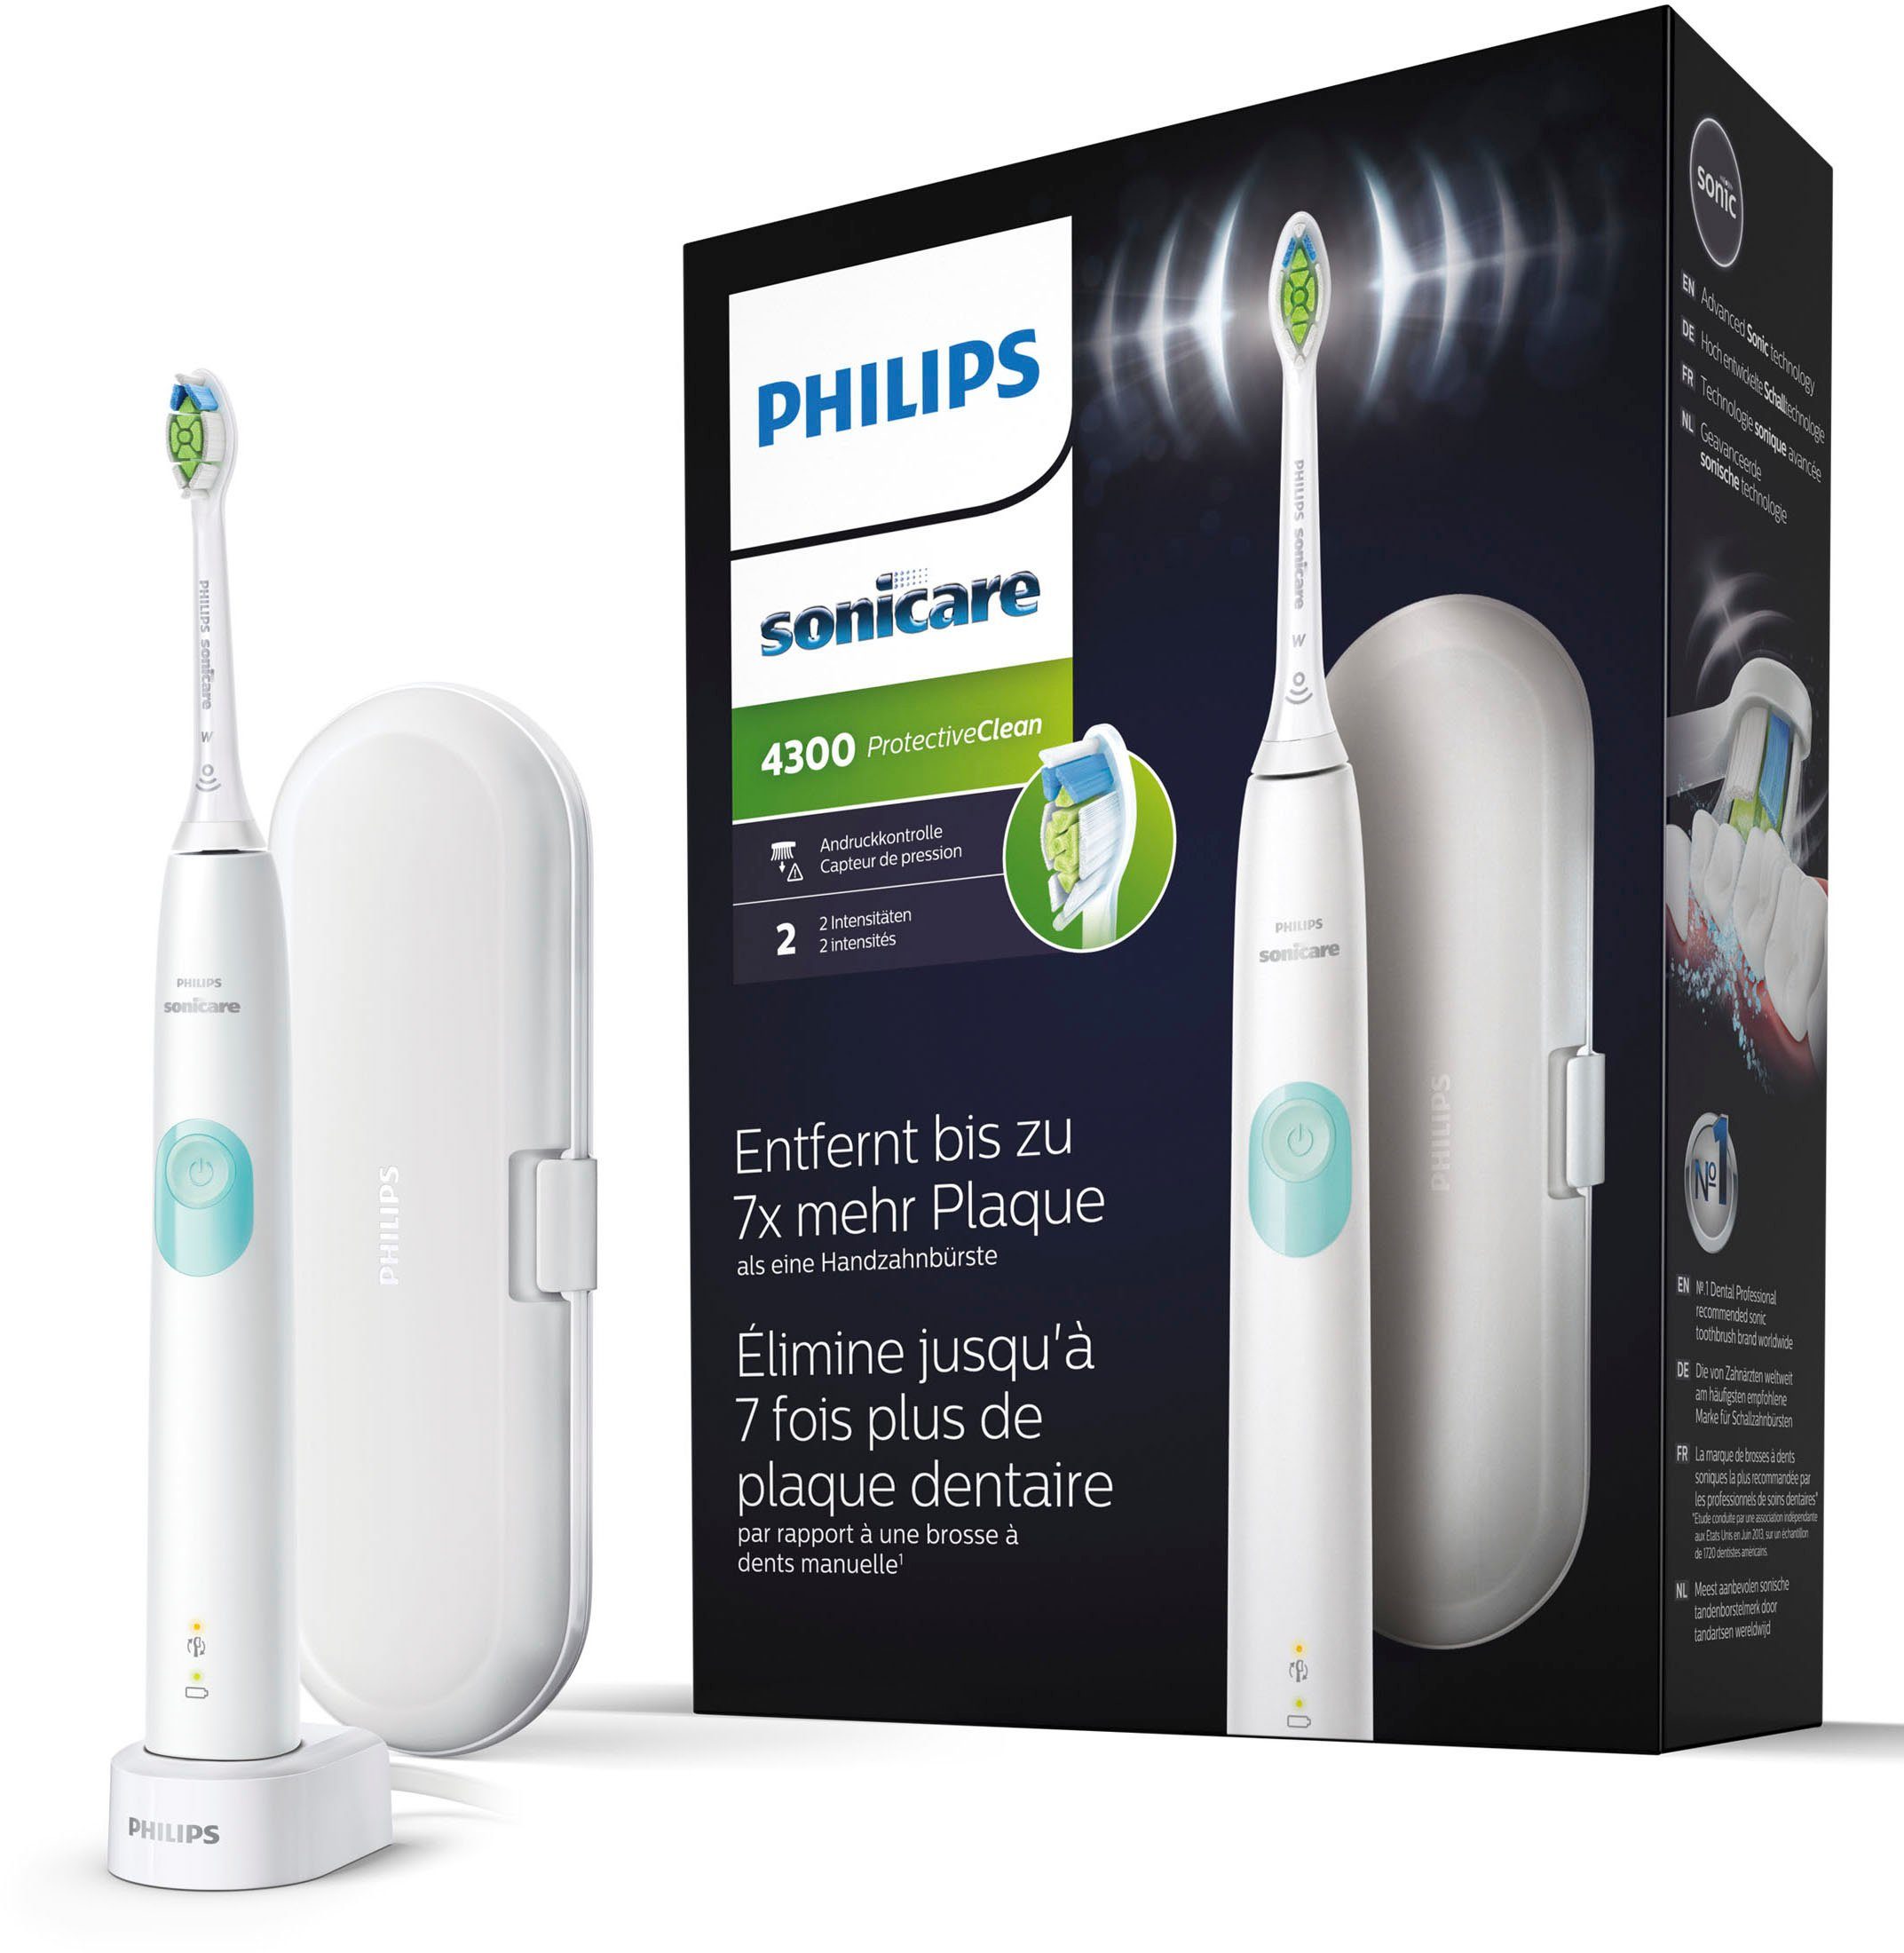 Philips Sonicare Elektrische Zahnbürste ProtectiveClean 4300 HX6807/28, Aufsteckbürsten: 1 St., mit Schalltechnologie und BrushSync Funktion, Ladestation, Reiseetui | Schallzahnbürsten